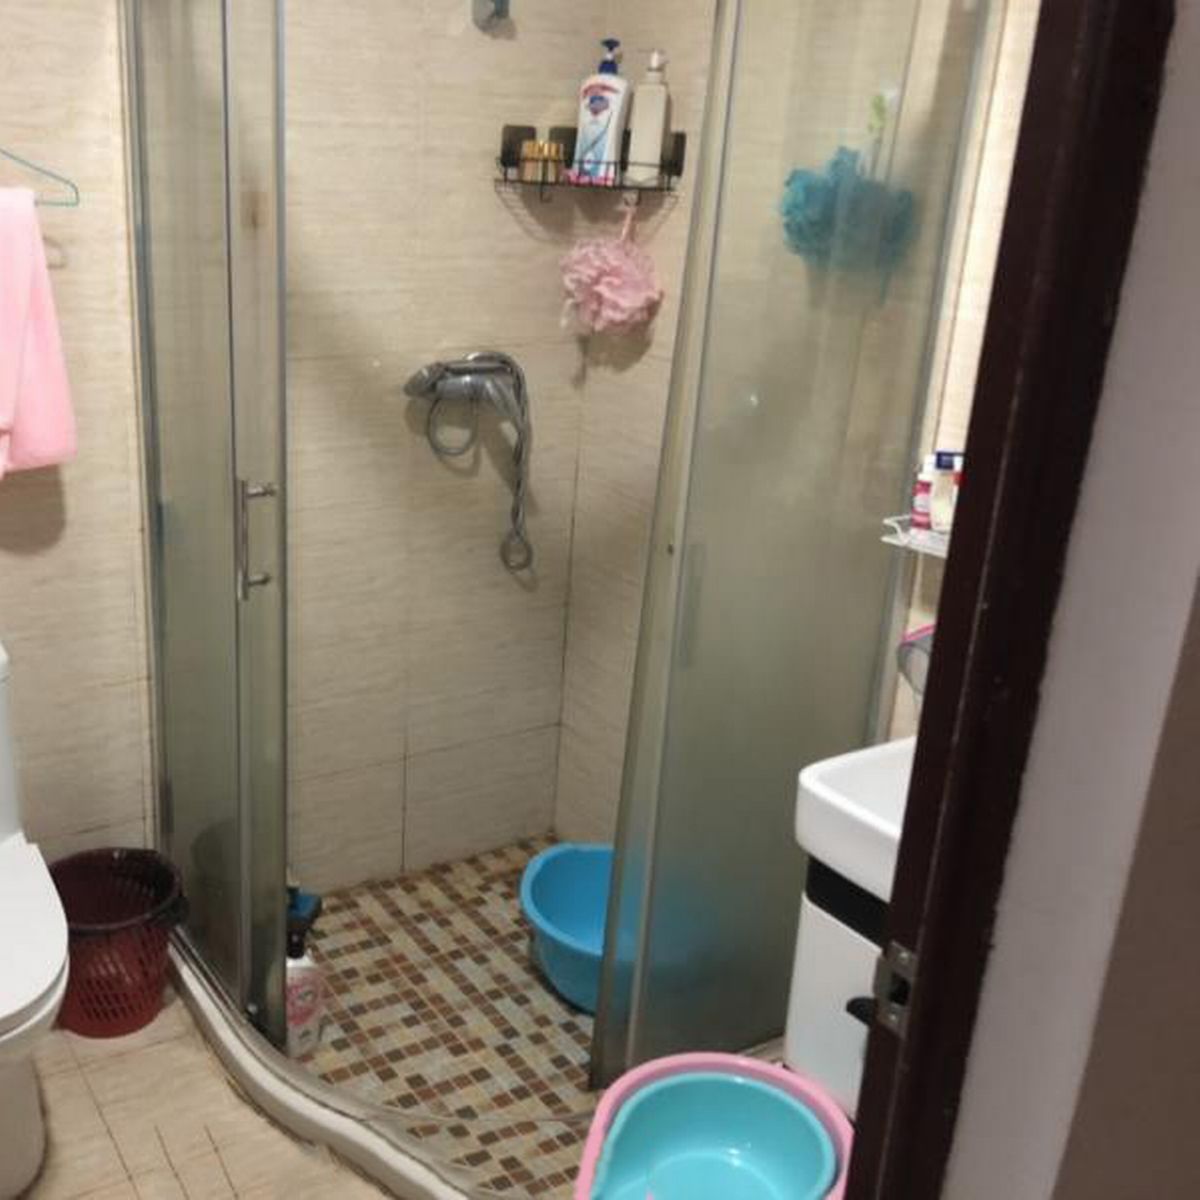 arter cruz share mens bathroom spy cam photos